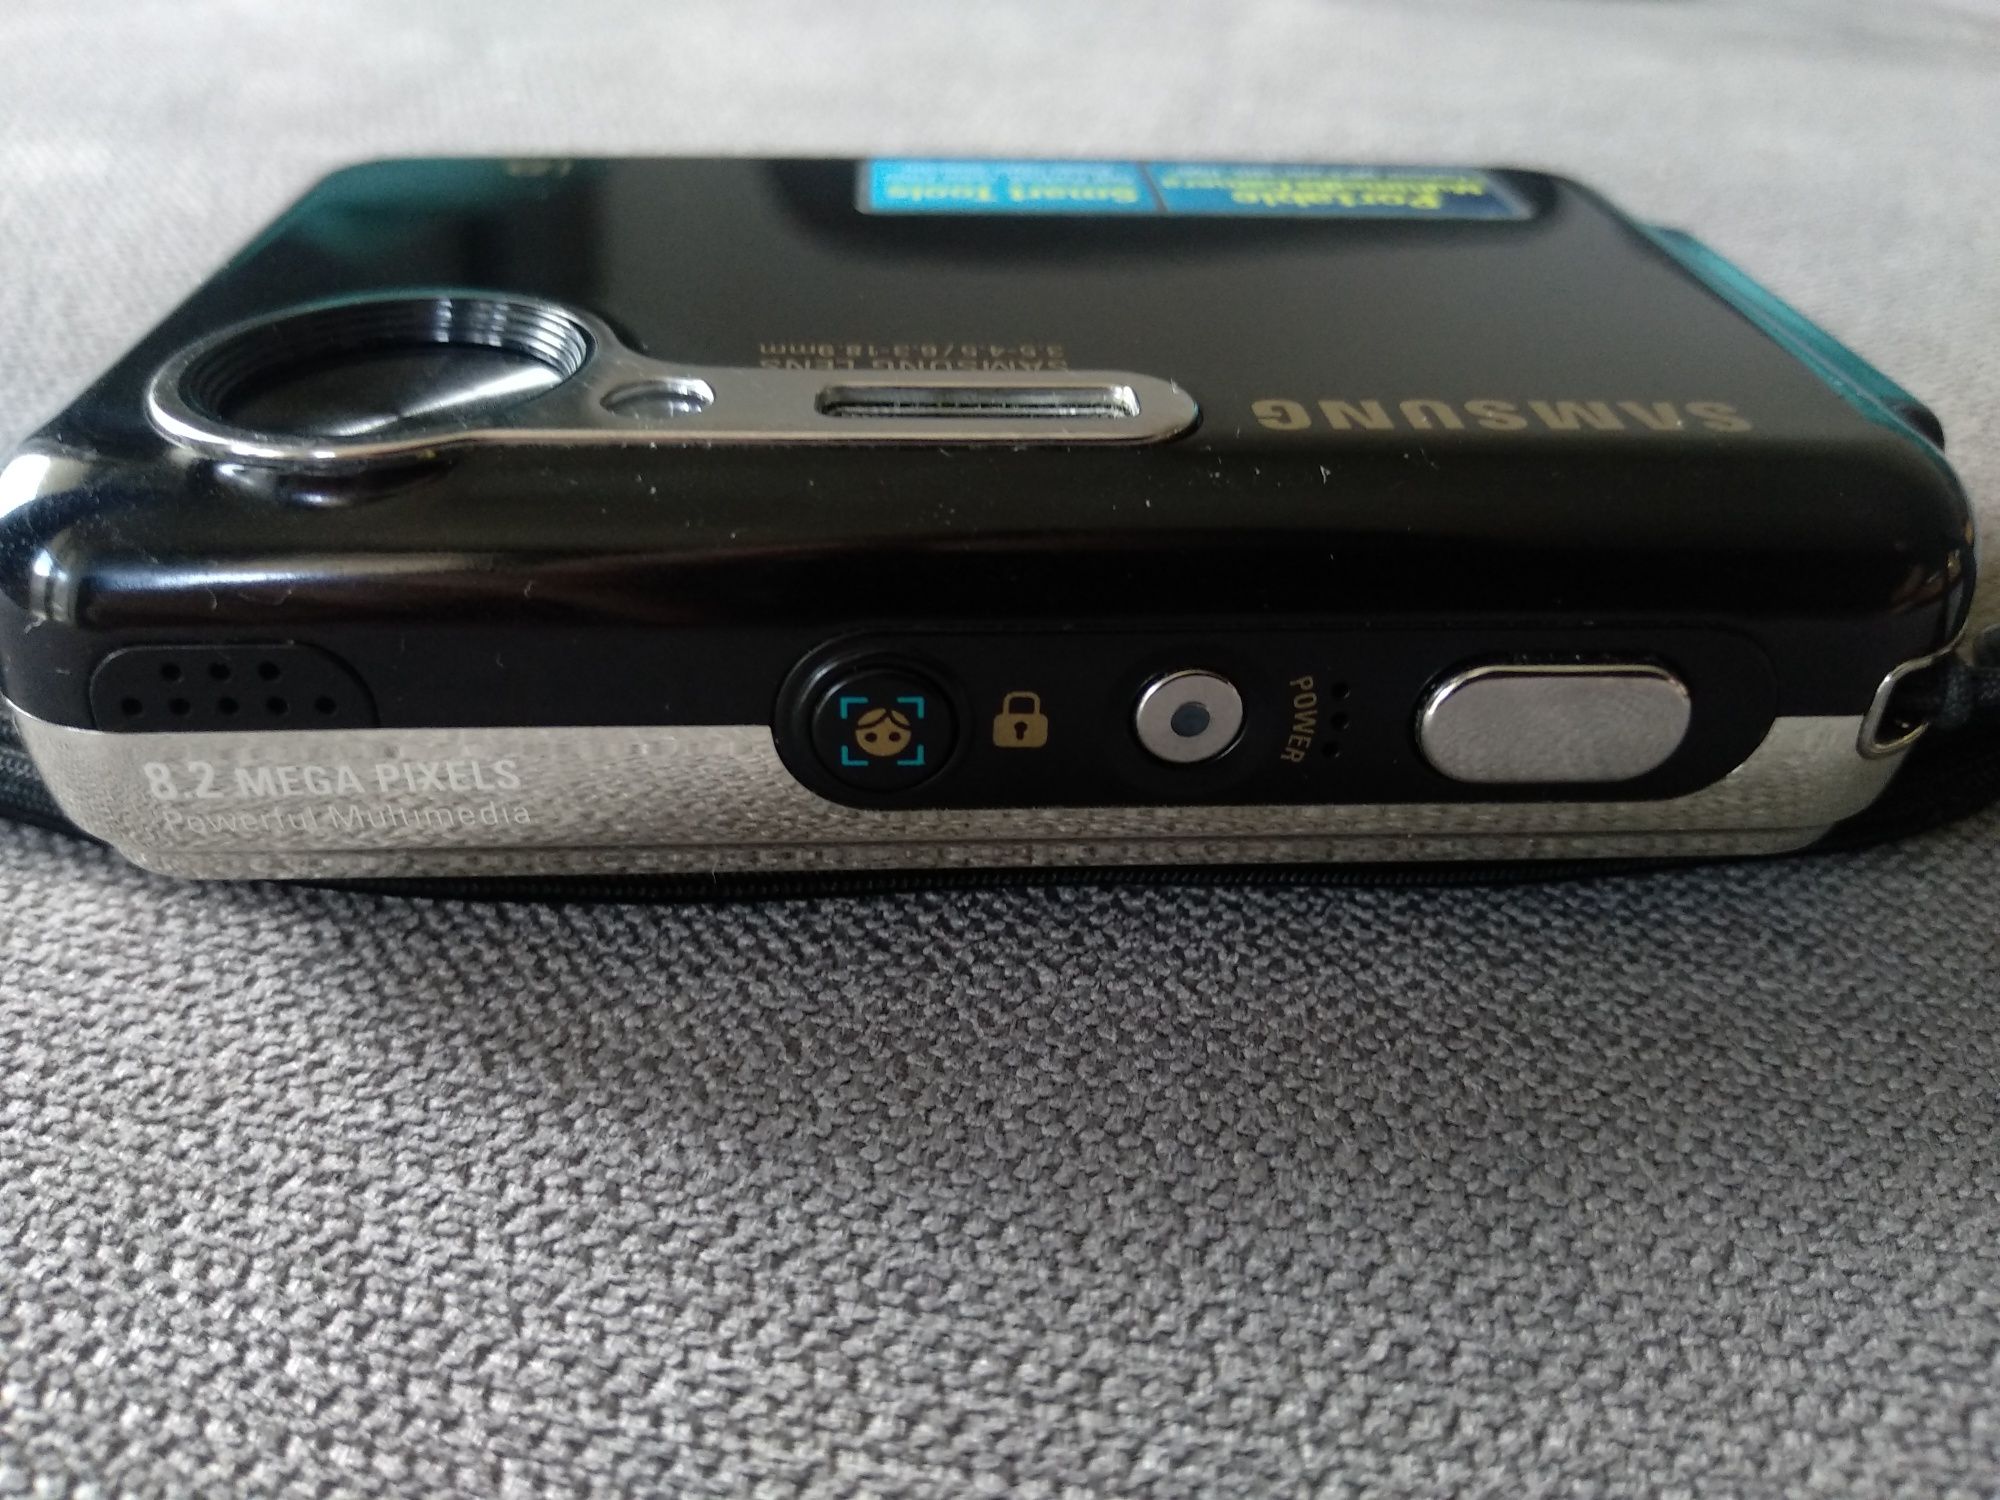 Aparat kompaktowy Samsung i8